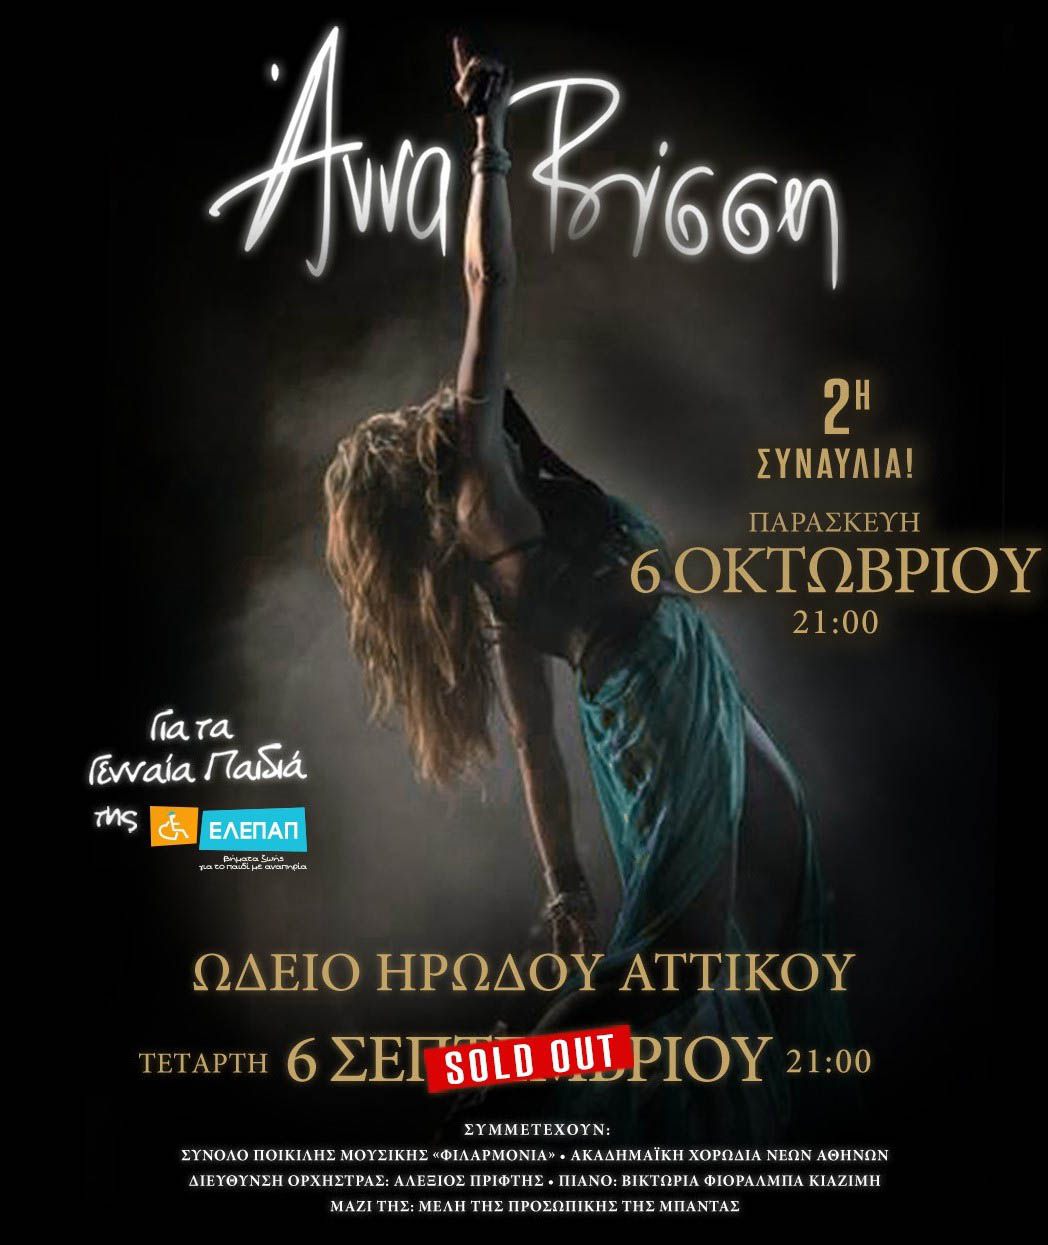 Άννα Βίσση: 2η συναυλία 6 Οκτωβρίου στο Ηρώδειο μετά το sold out σε χρόνο - ρεκόρ